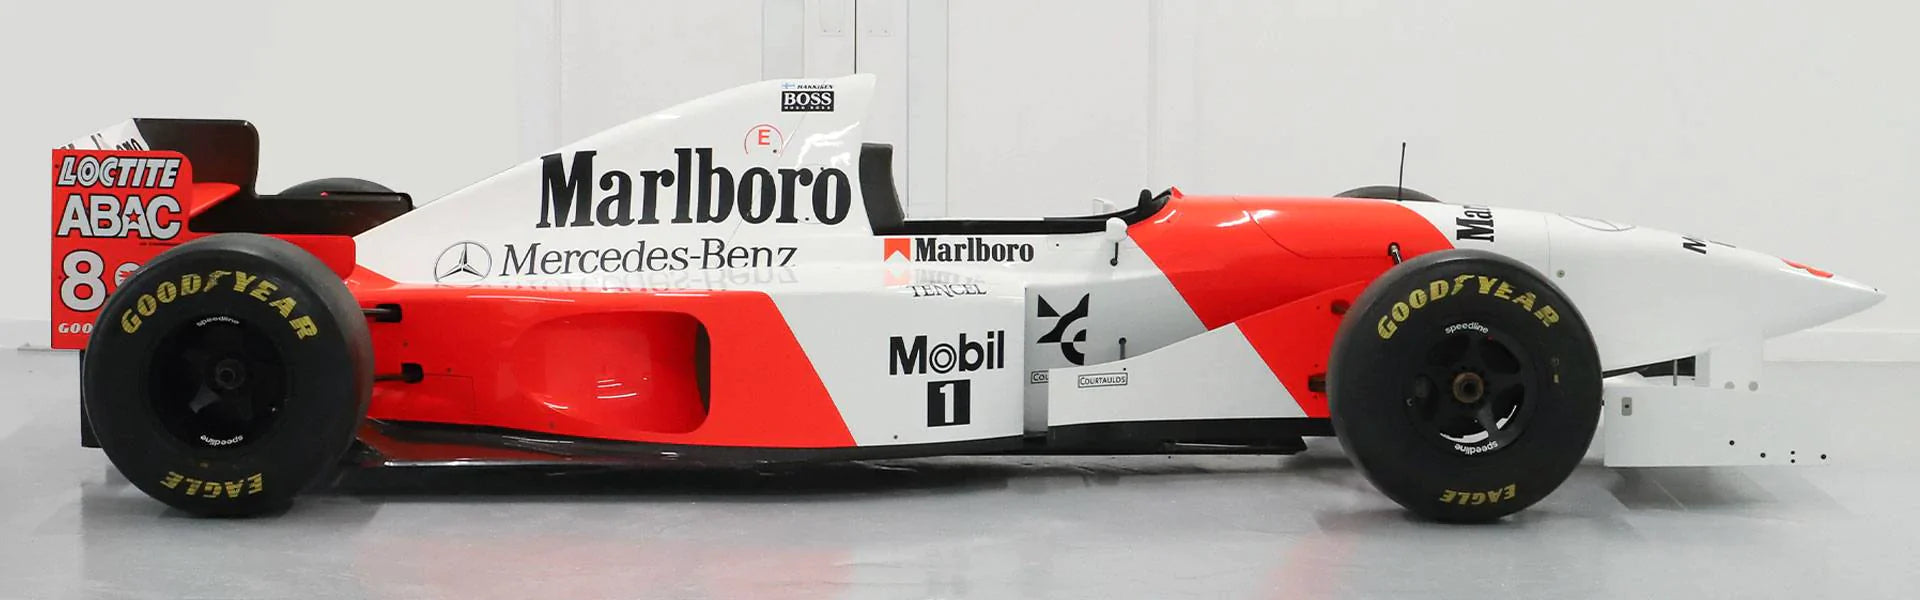 1995 McLaren MP4-10 Official Show Car - Mika Hakkinen Livery